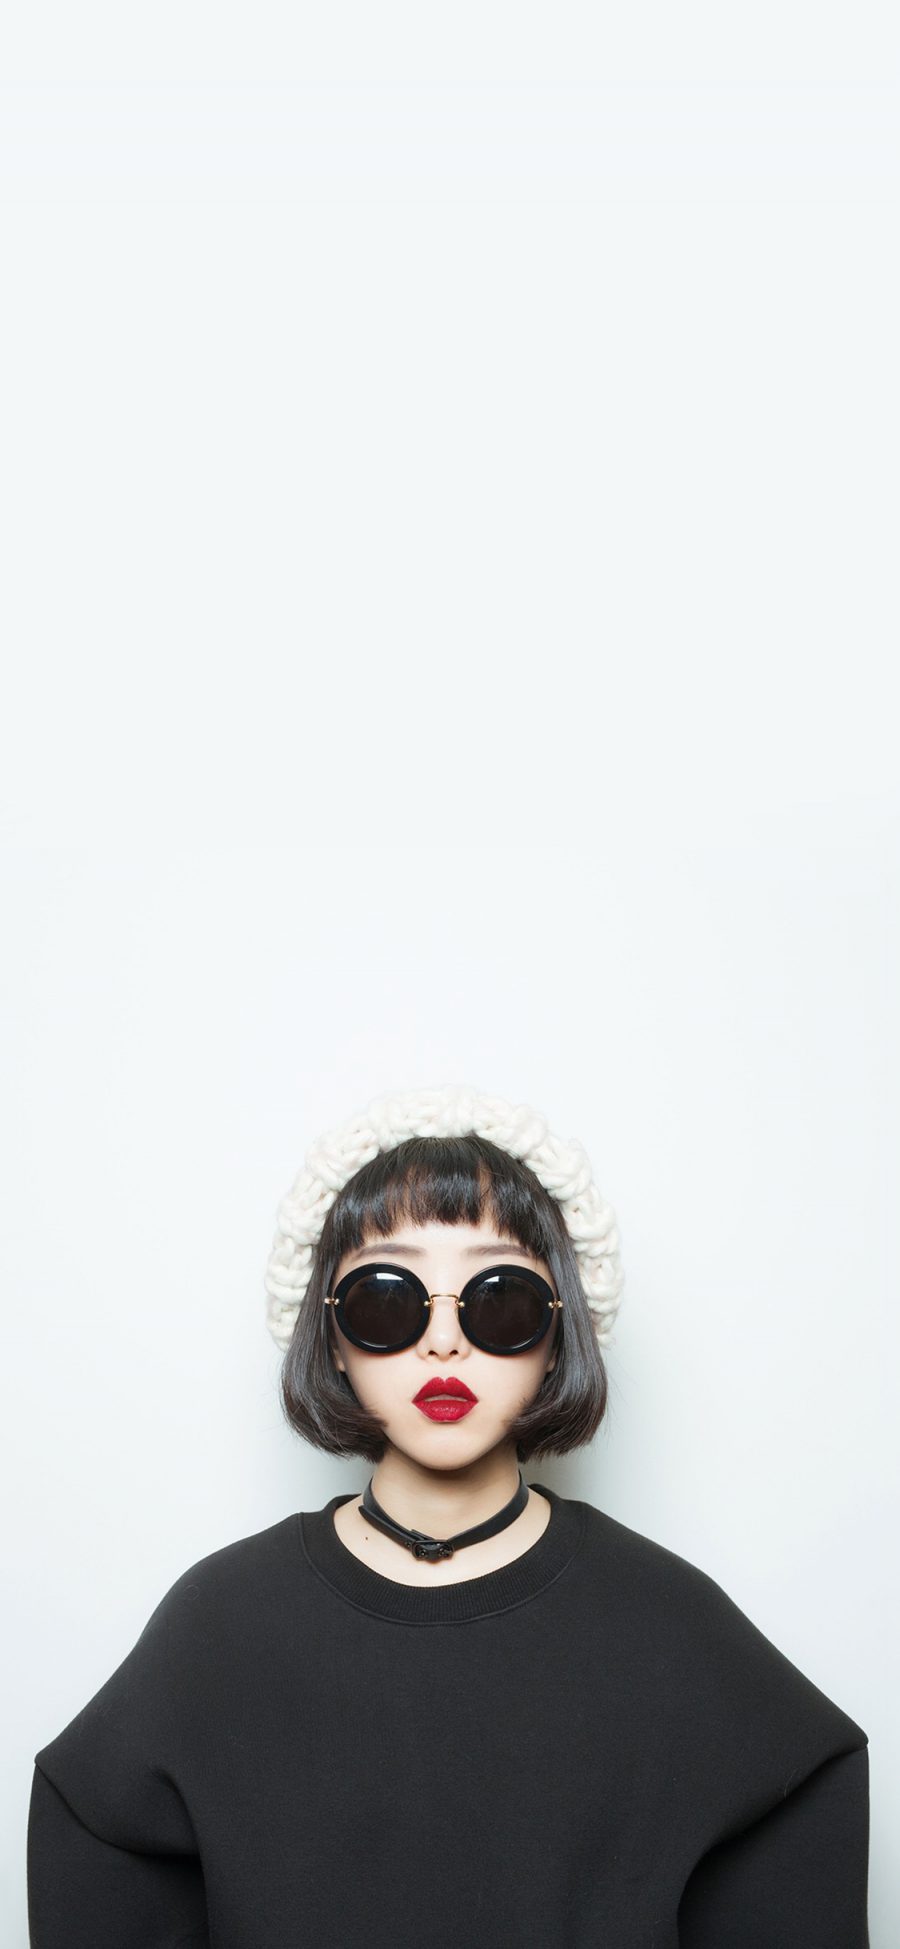 [2436×1125]个性 时尚 短发 墨镜 红唇 苹果手机美女壁纸图片